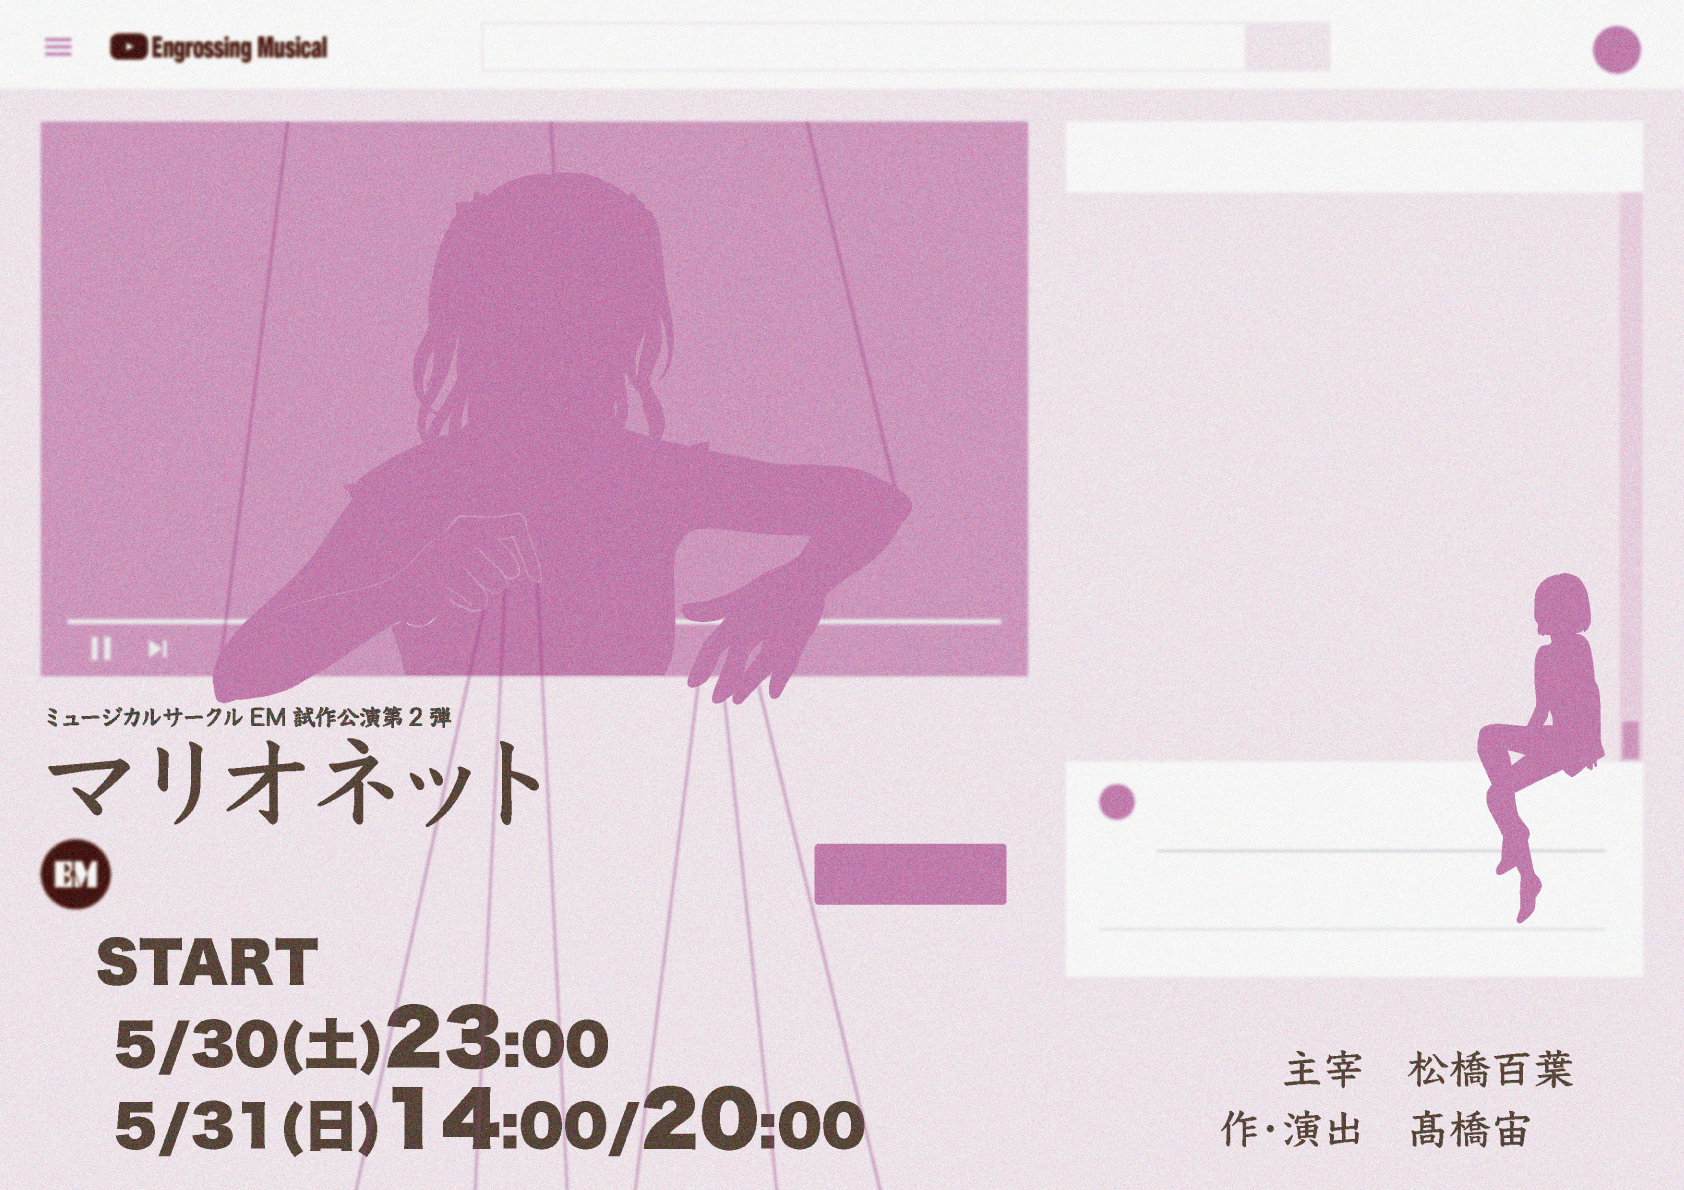 「ミュージカルサークルEM 試作公演第2弾『マリオネット』5月30・31日上演決定!!」の画像